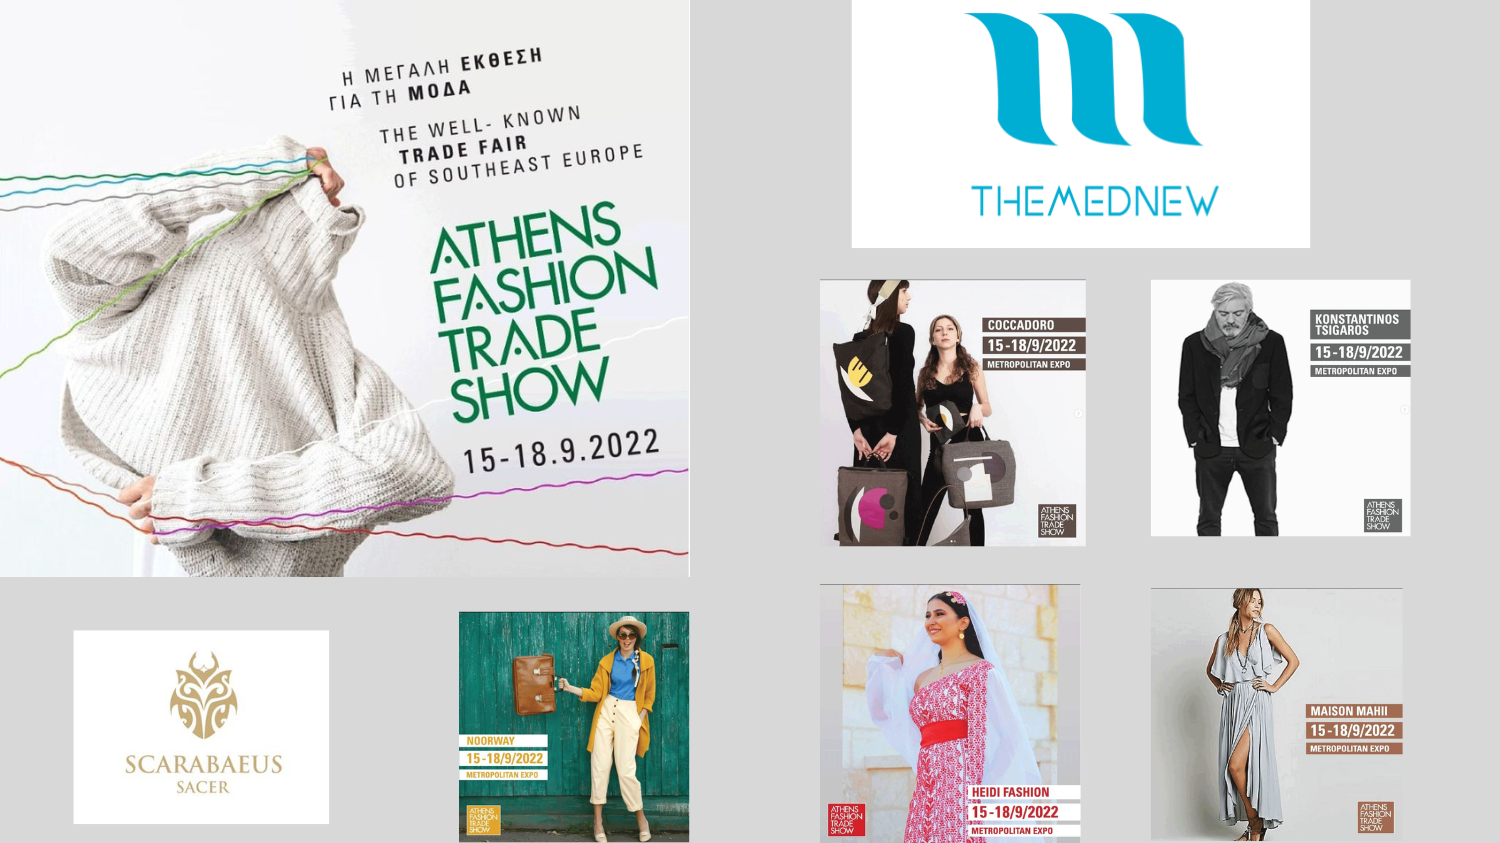 TEX-MED ALLIANCES revient au salon de la mode d'Athènes avec la marque de mode durable, TheMedNew